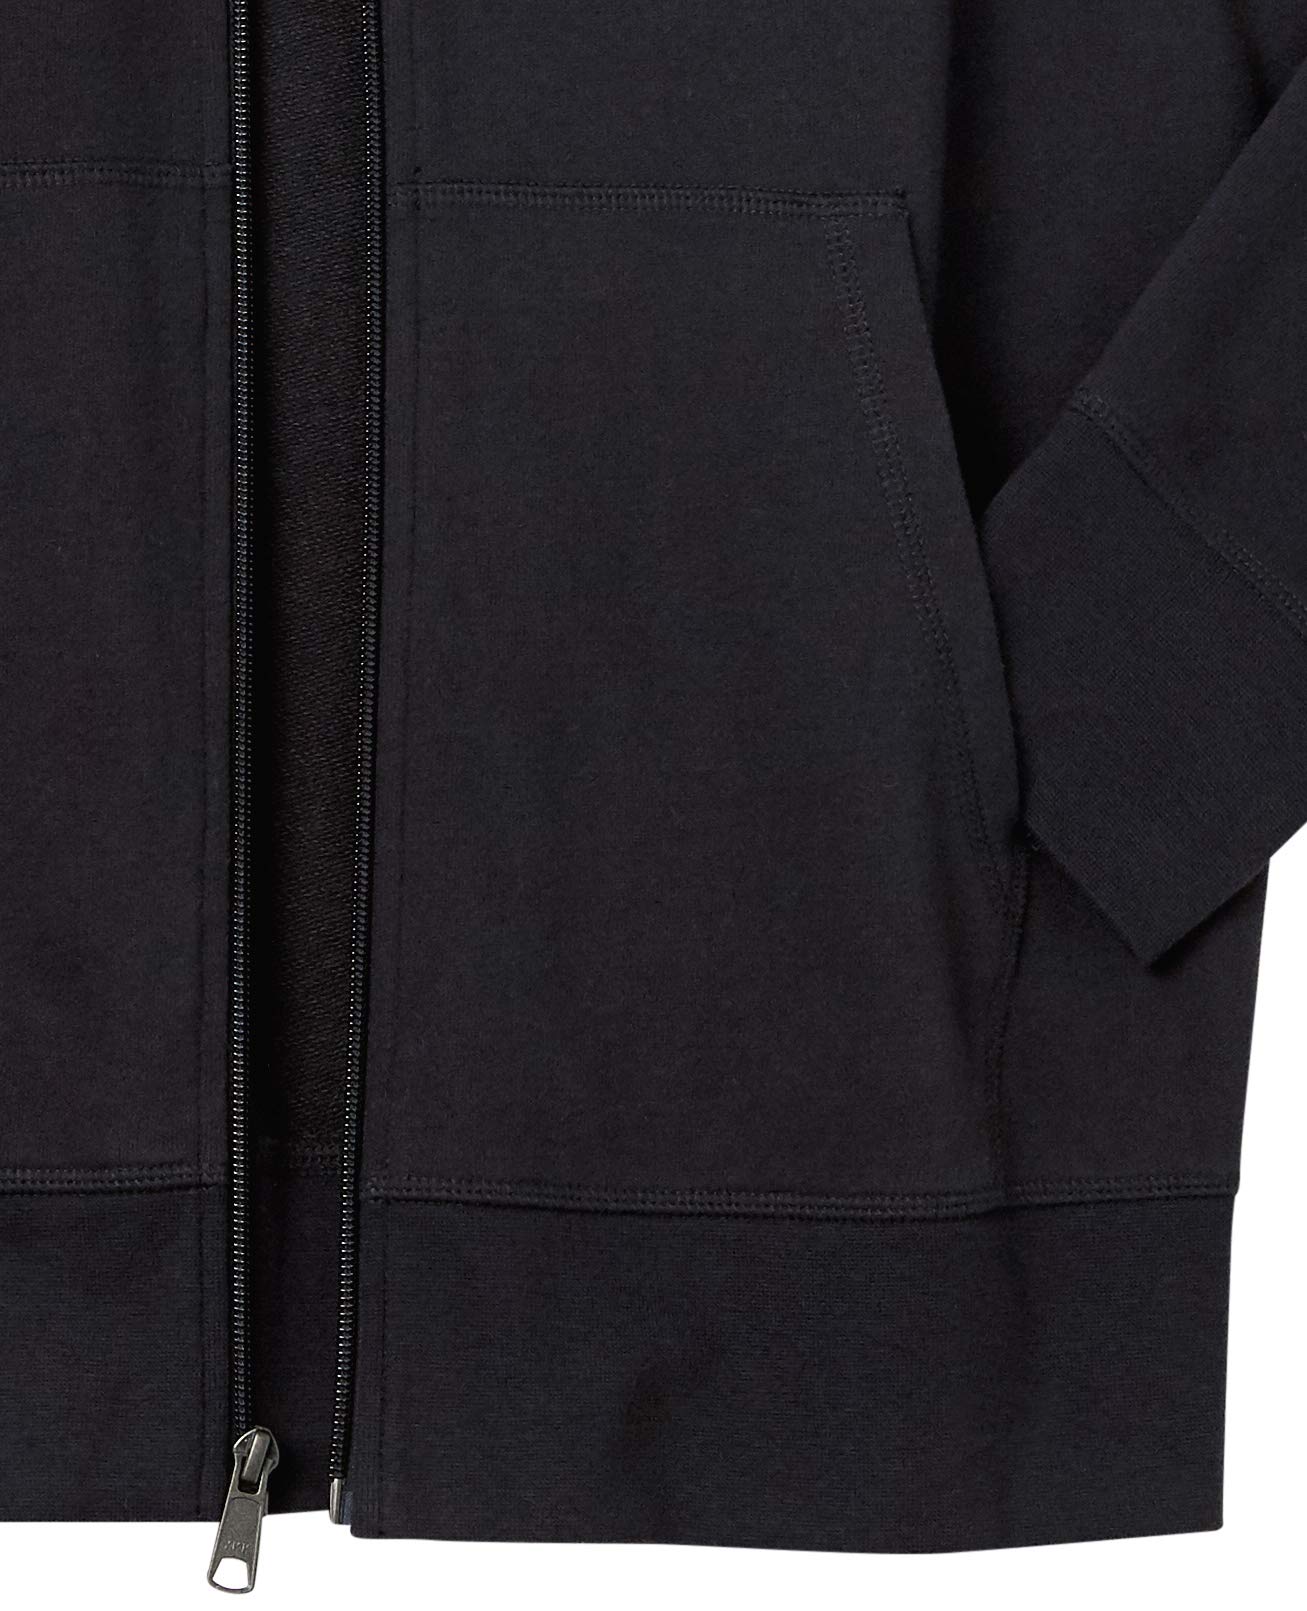 Amazon Essentials Men's Lightweight French Terry Full-Zip Hooded Sweatshirt